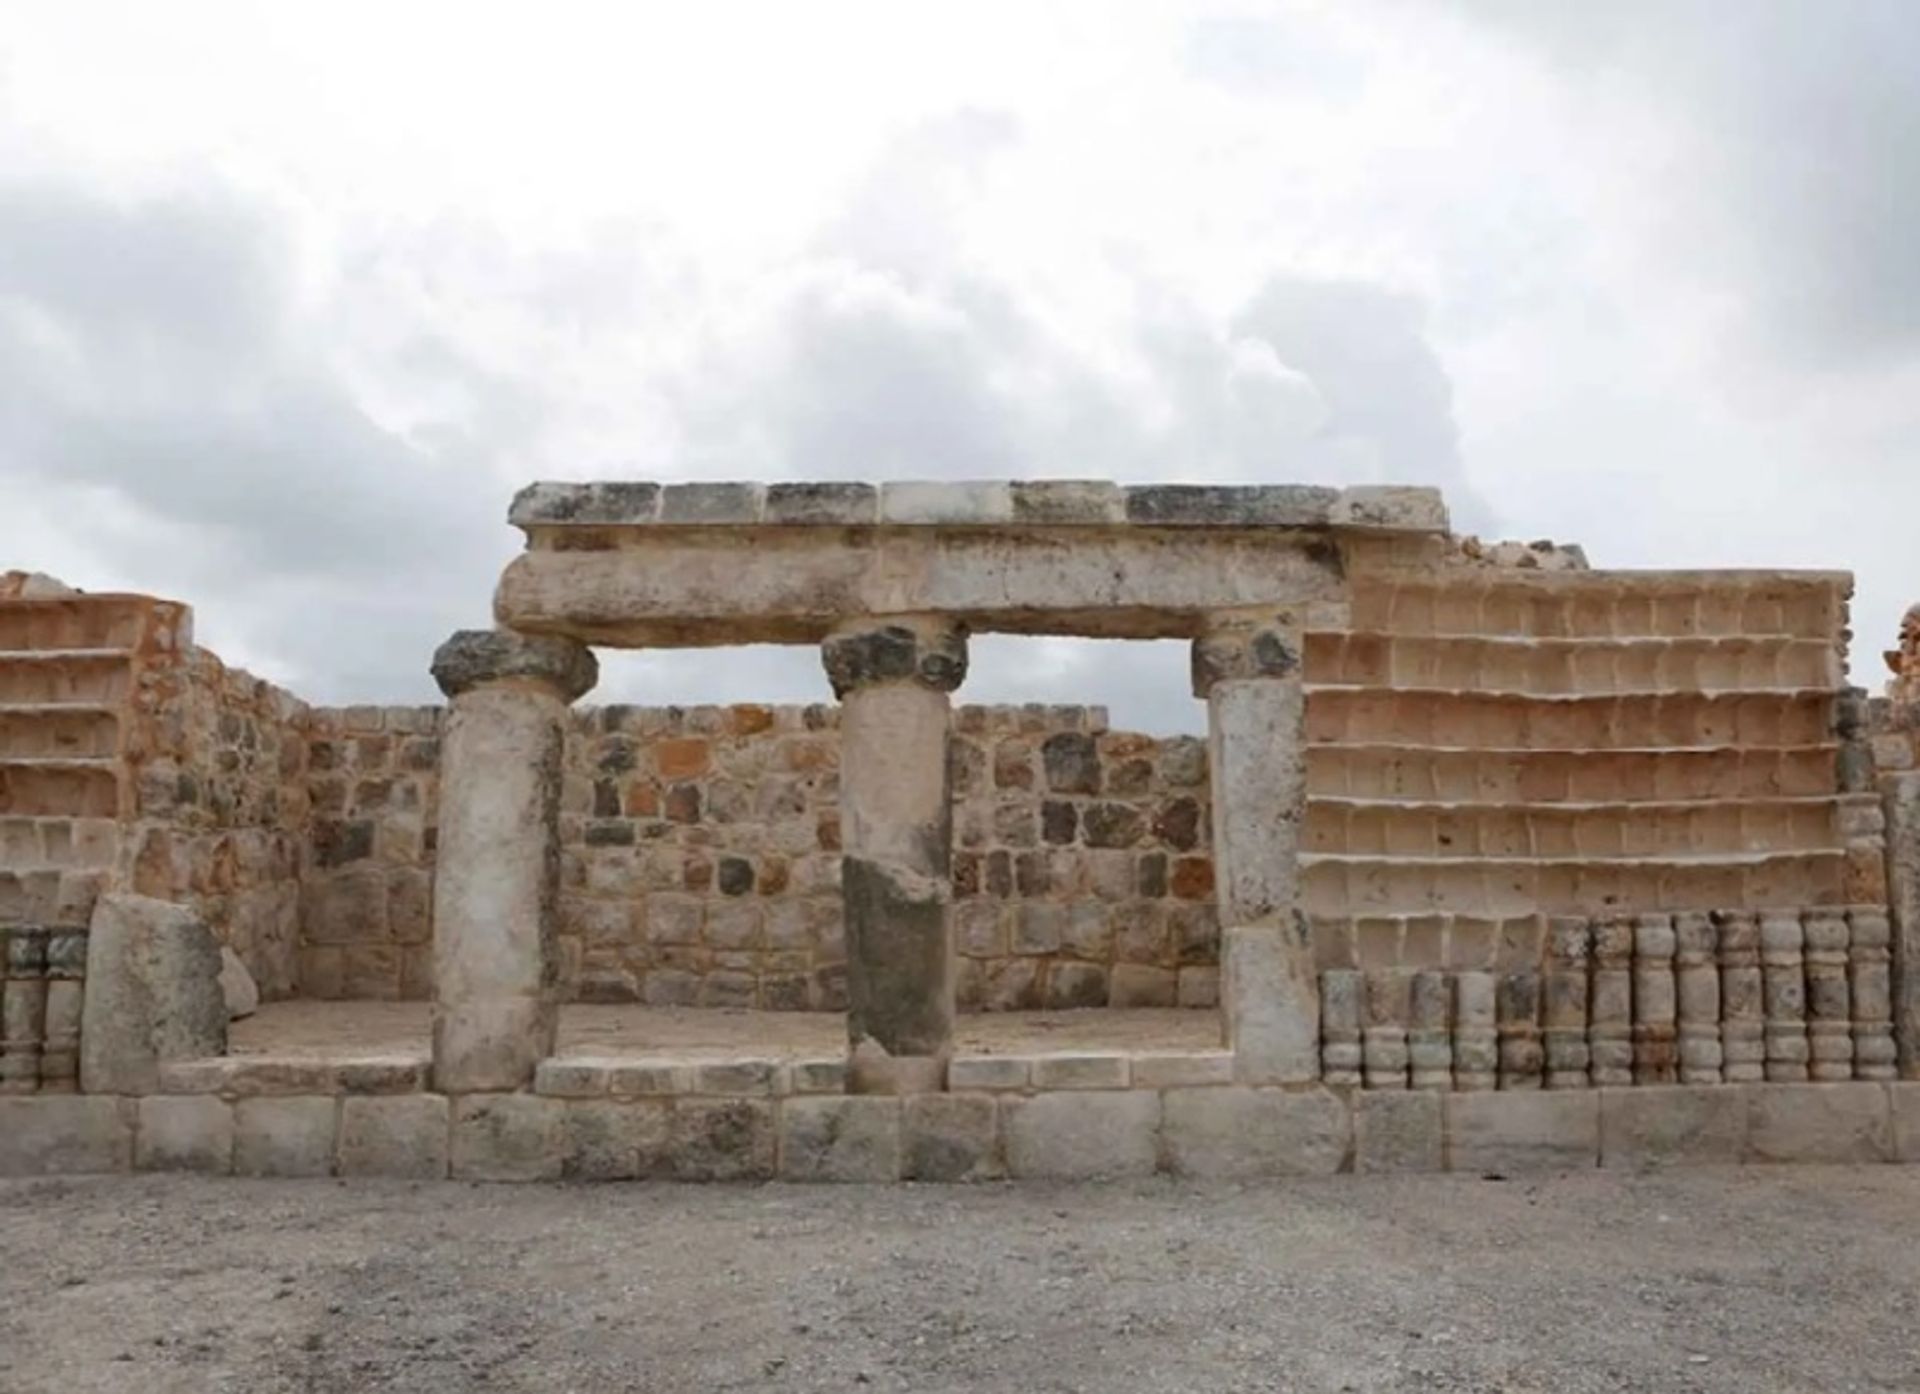 חורבות עיר מתקופת המאיה המוכרת בשם, שיול, התגלו במהלך בדיקה לפני בניית פארק תעשייתי

רויטרס